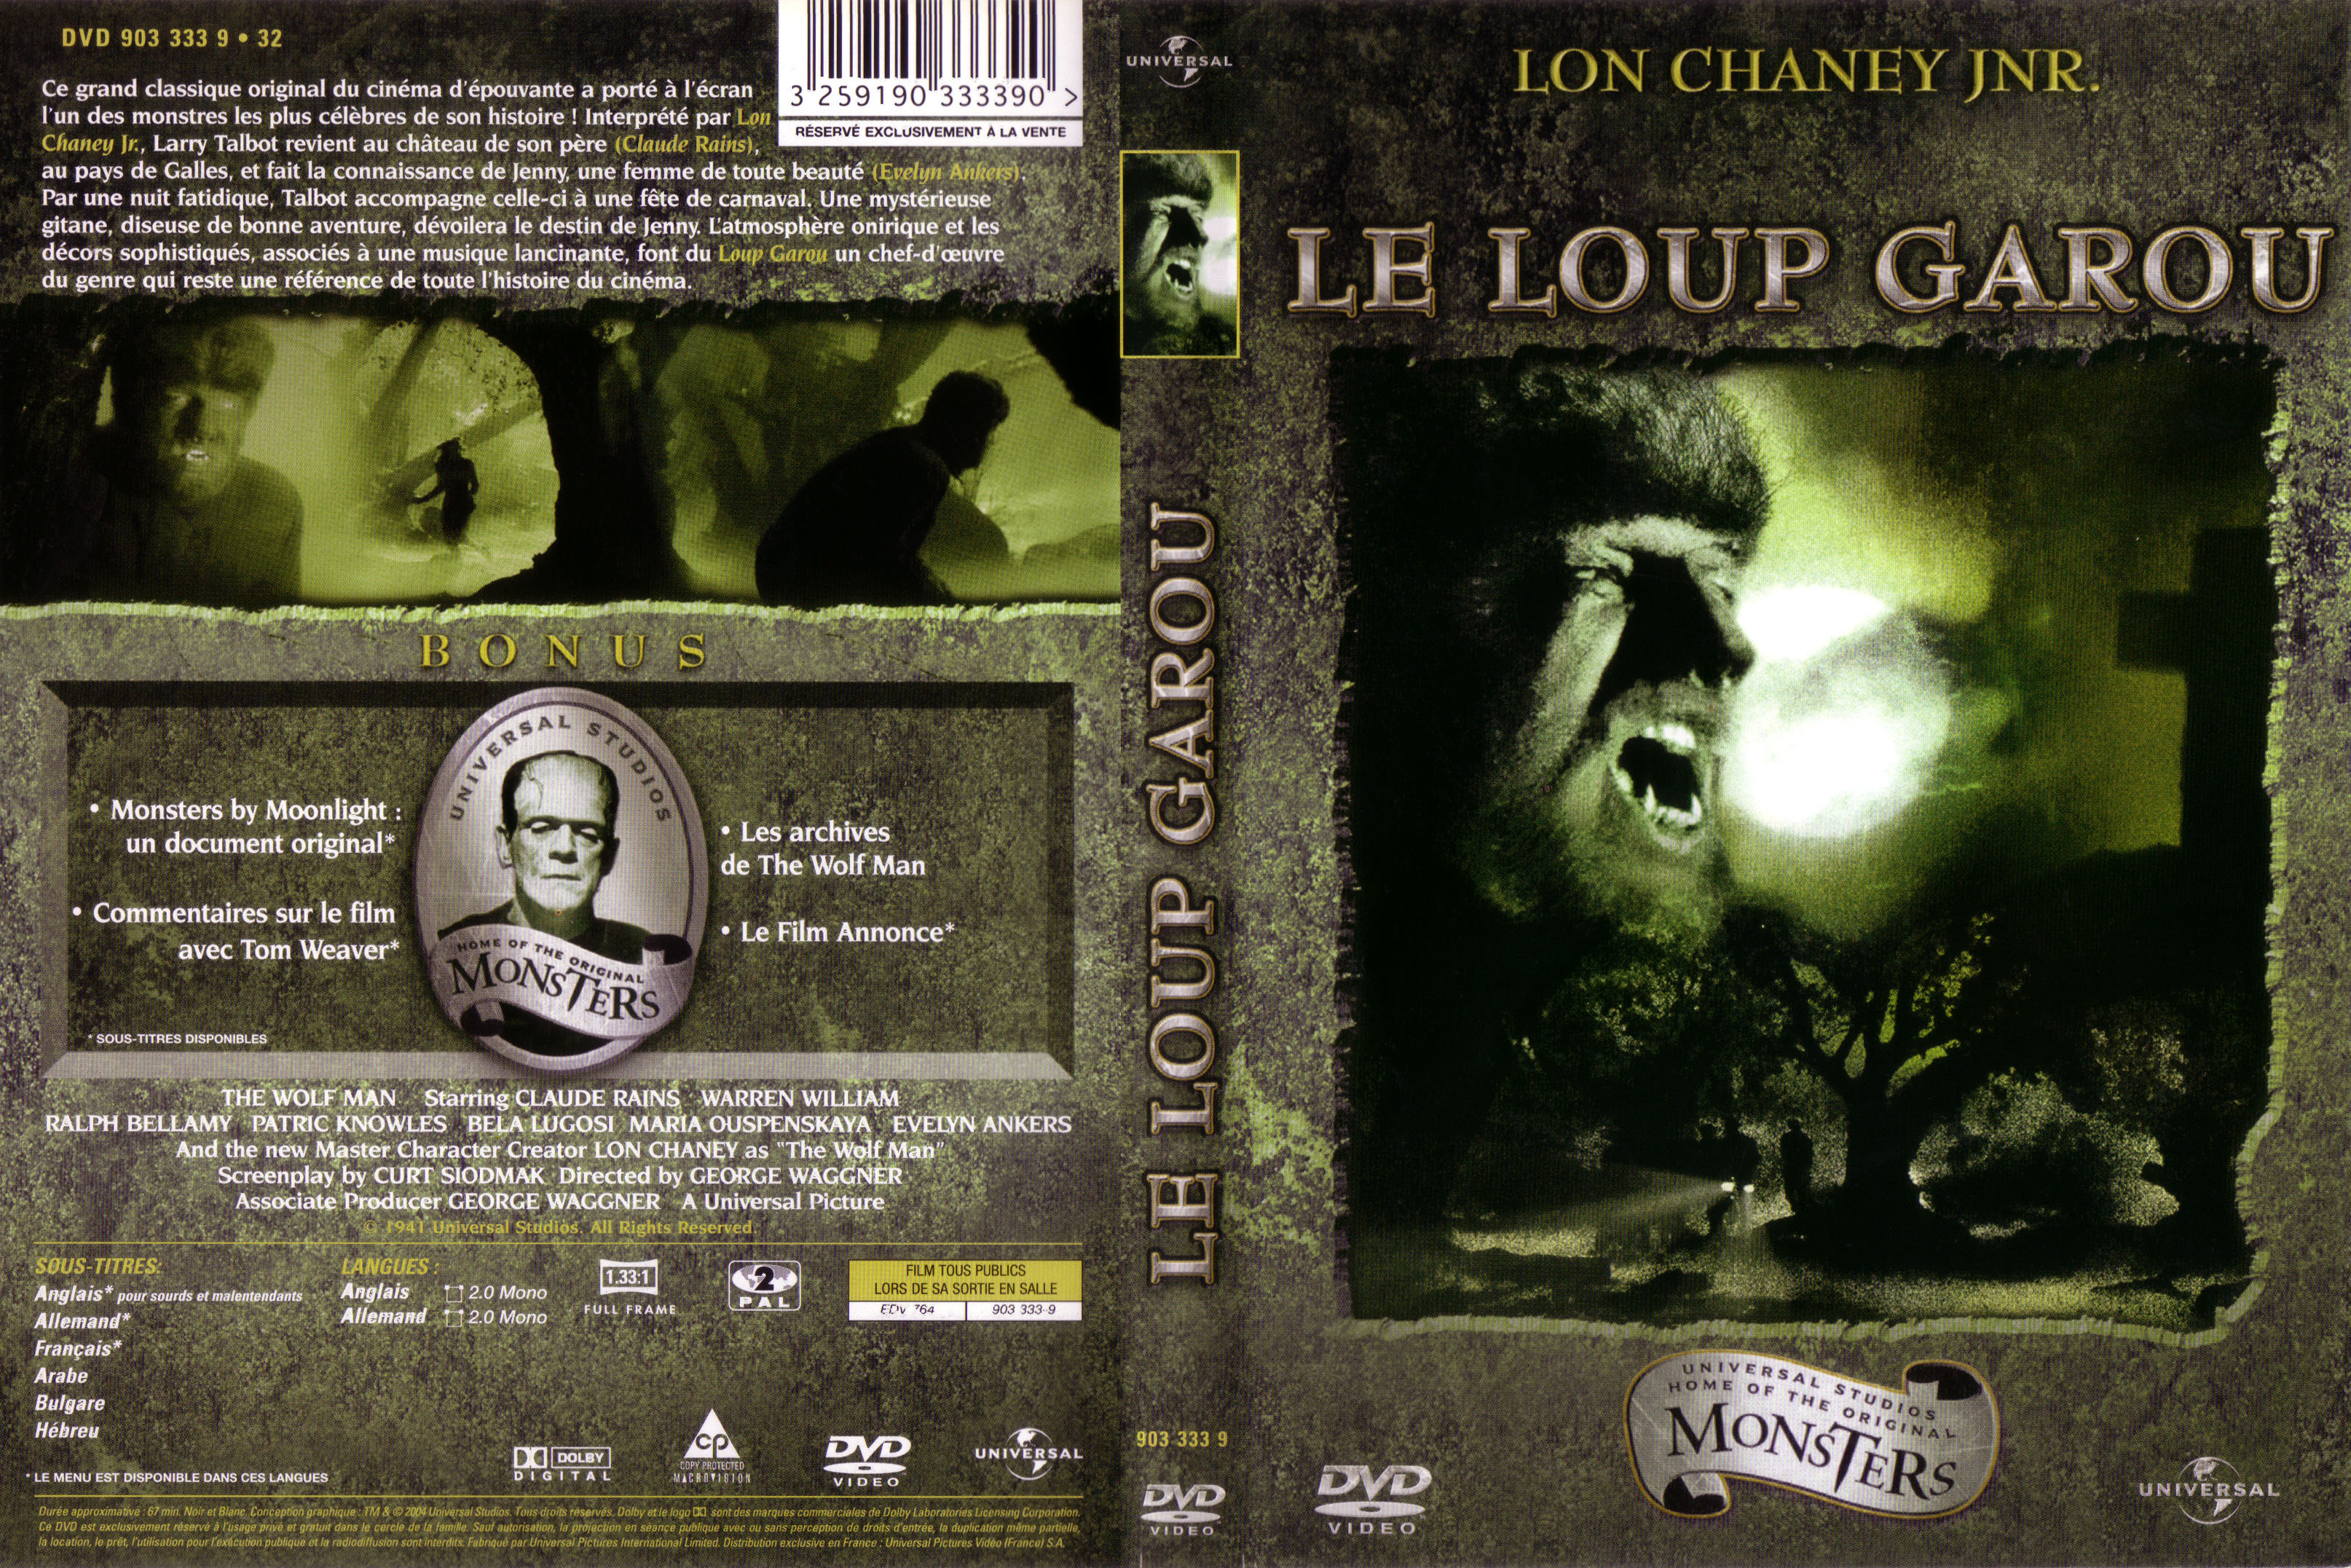 Jaquette DVD Le loup garou